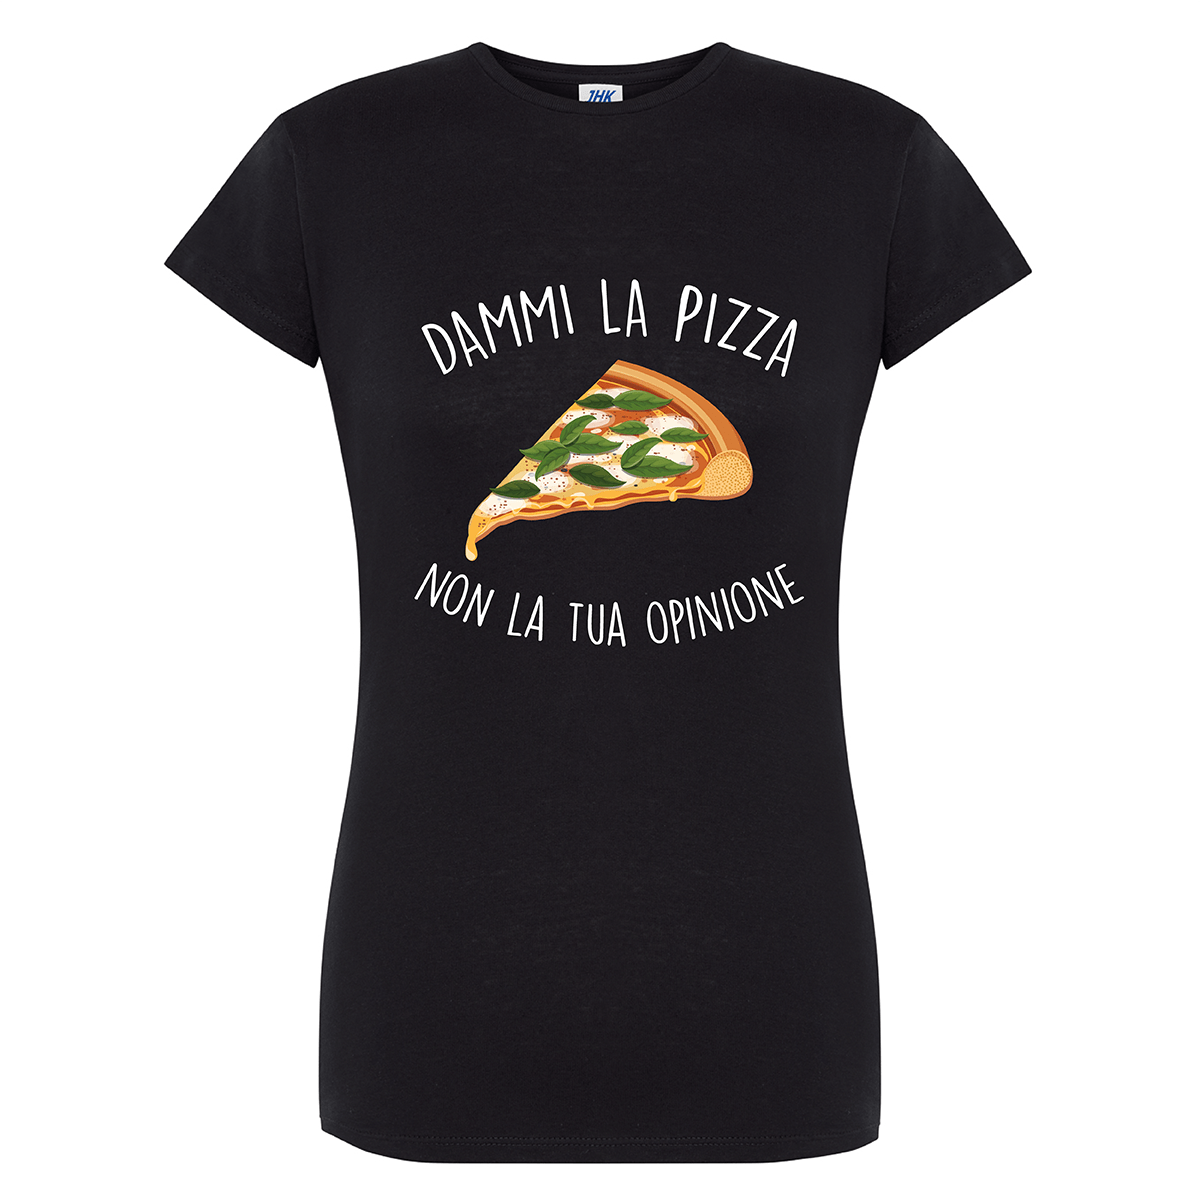 Lol T-Shirt T-shirt s / nero Dammi la pizza non la tua opinione